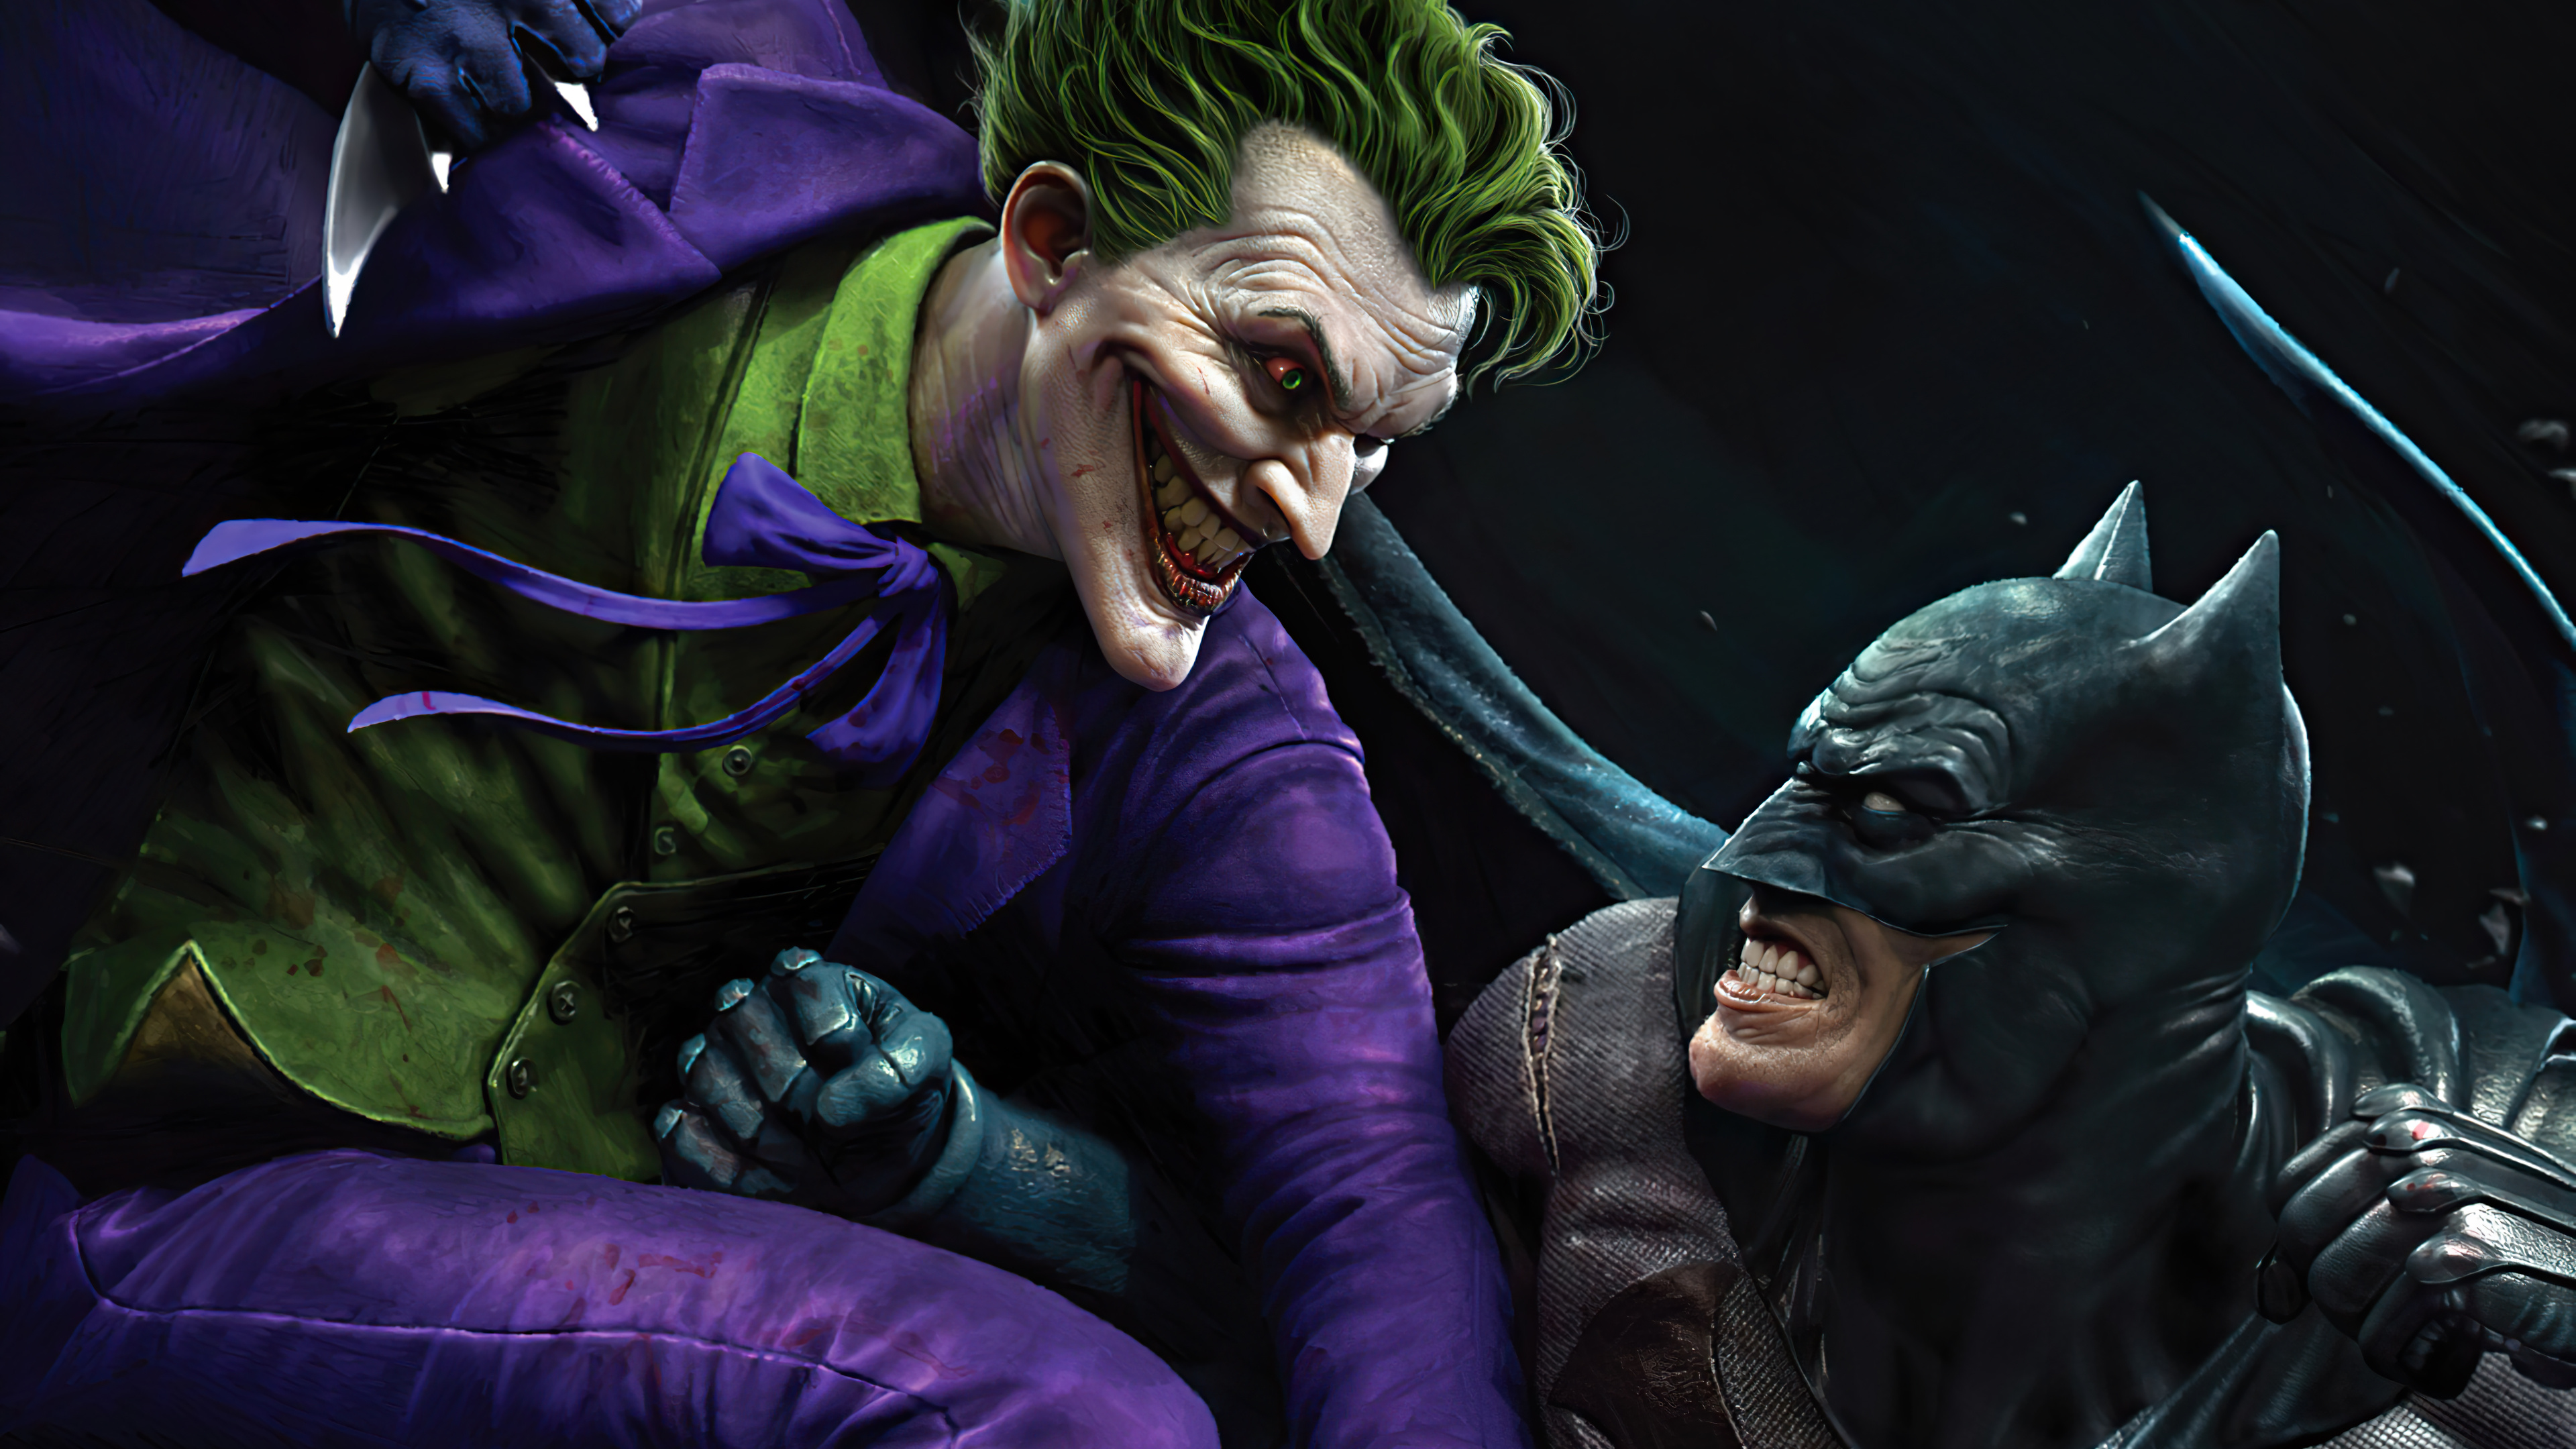 Joker vs Batman HD 4K Wallpaper 873 3840x2160. 